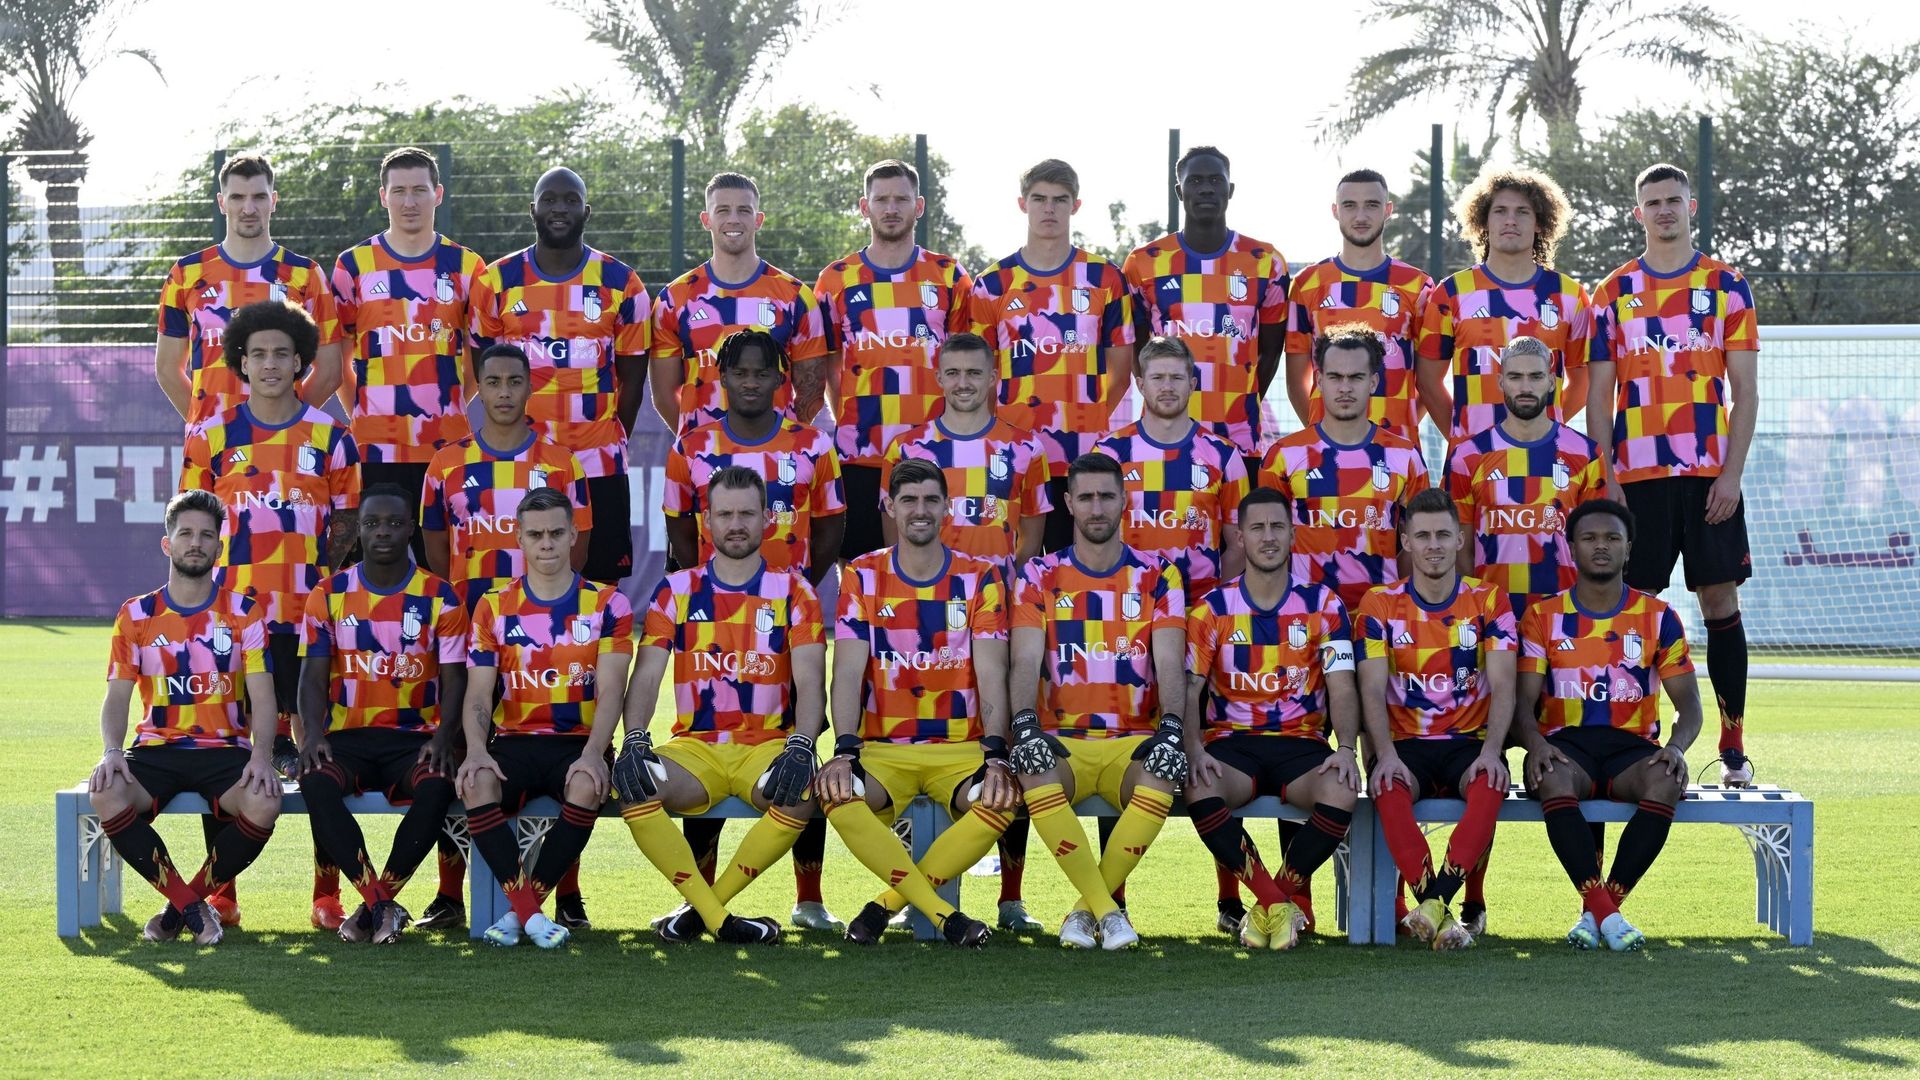 Les joueurs de la Belgique posent pour la photo d’équipe.